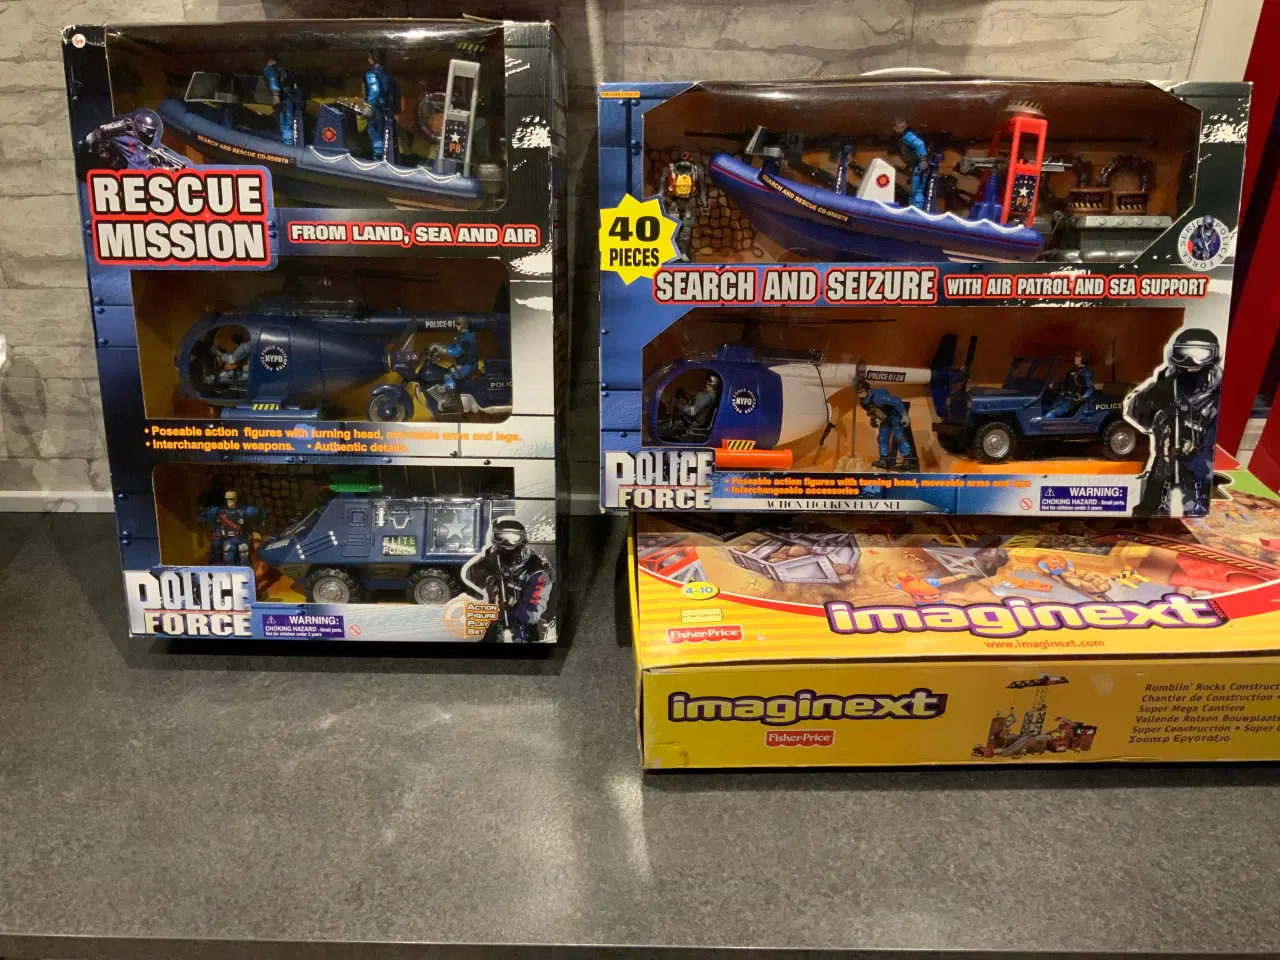 Billede 1 - Policeforce og imaginext legetøj